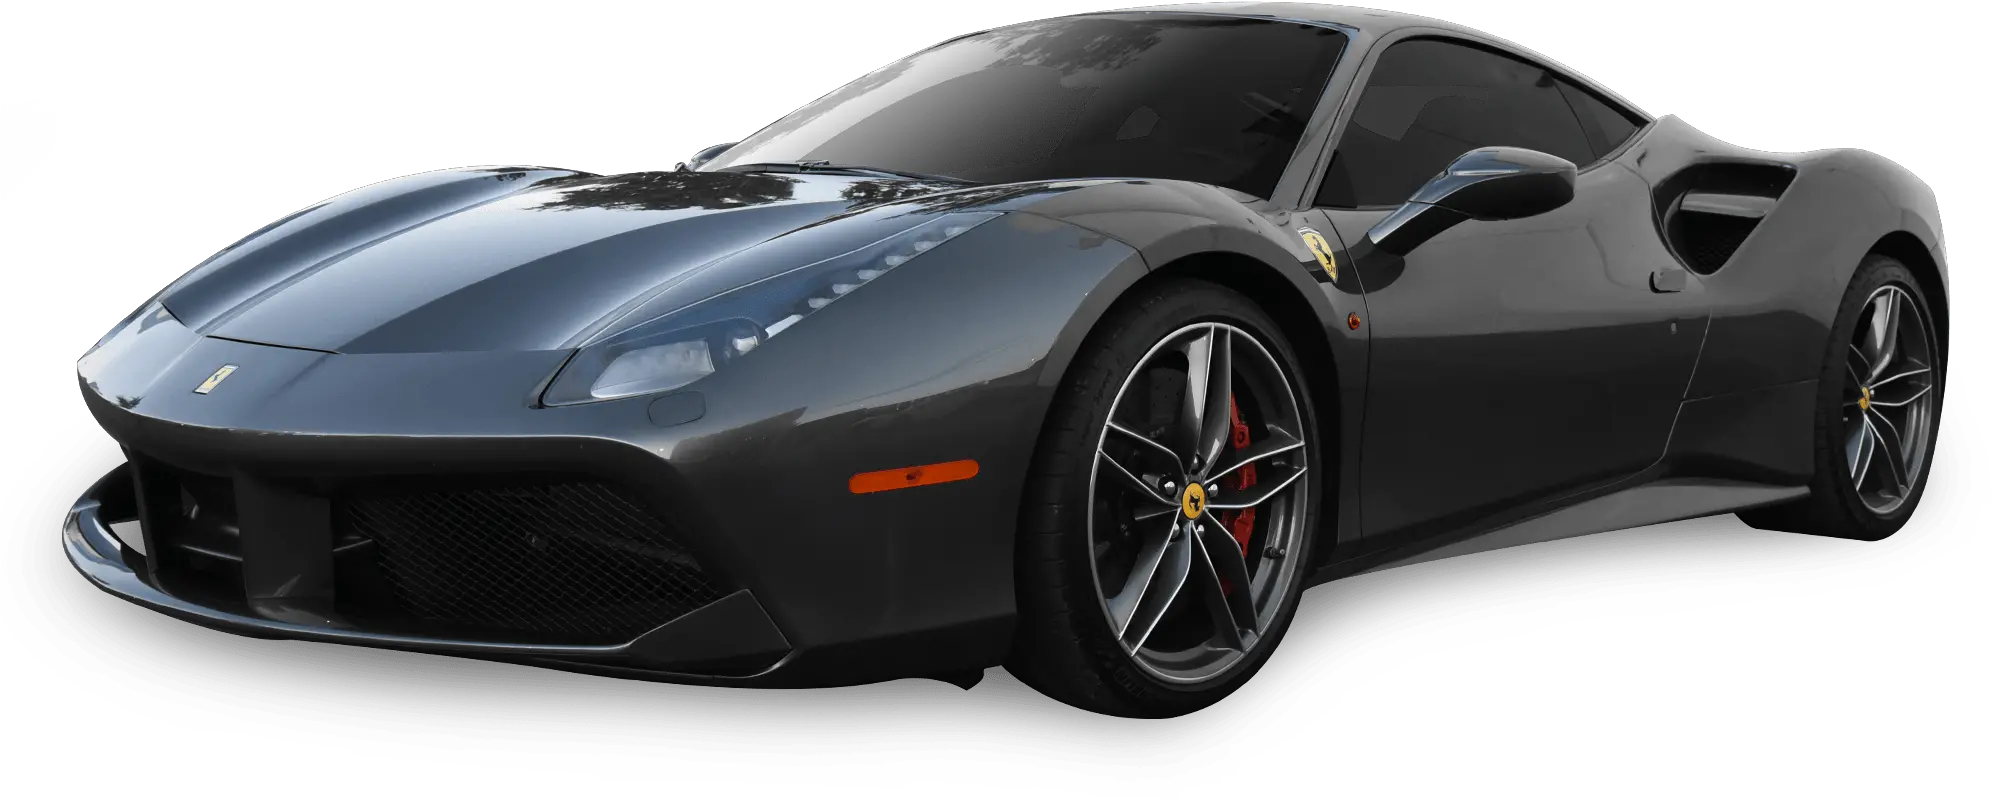 Download Ferrari 458 Hd Png Uokplrs Carbon Fibers Ferrari Transparent